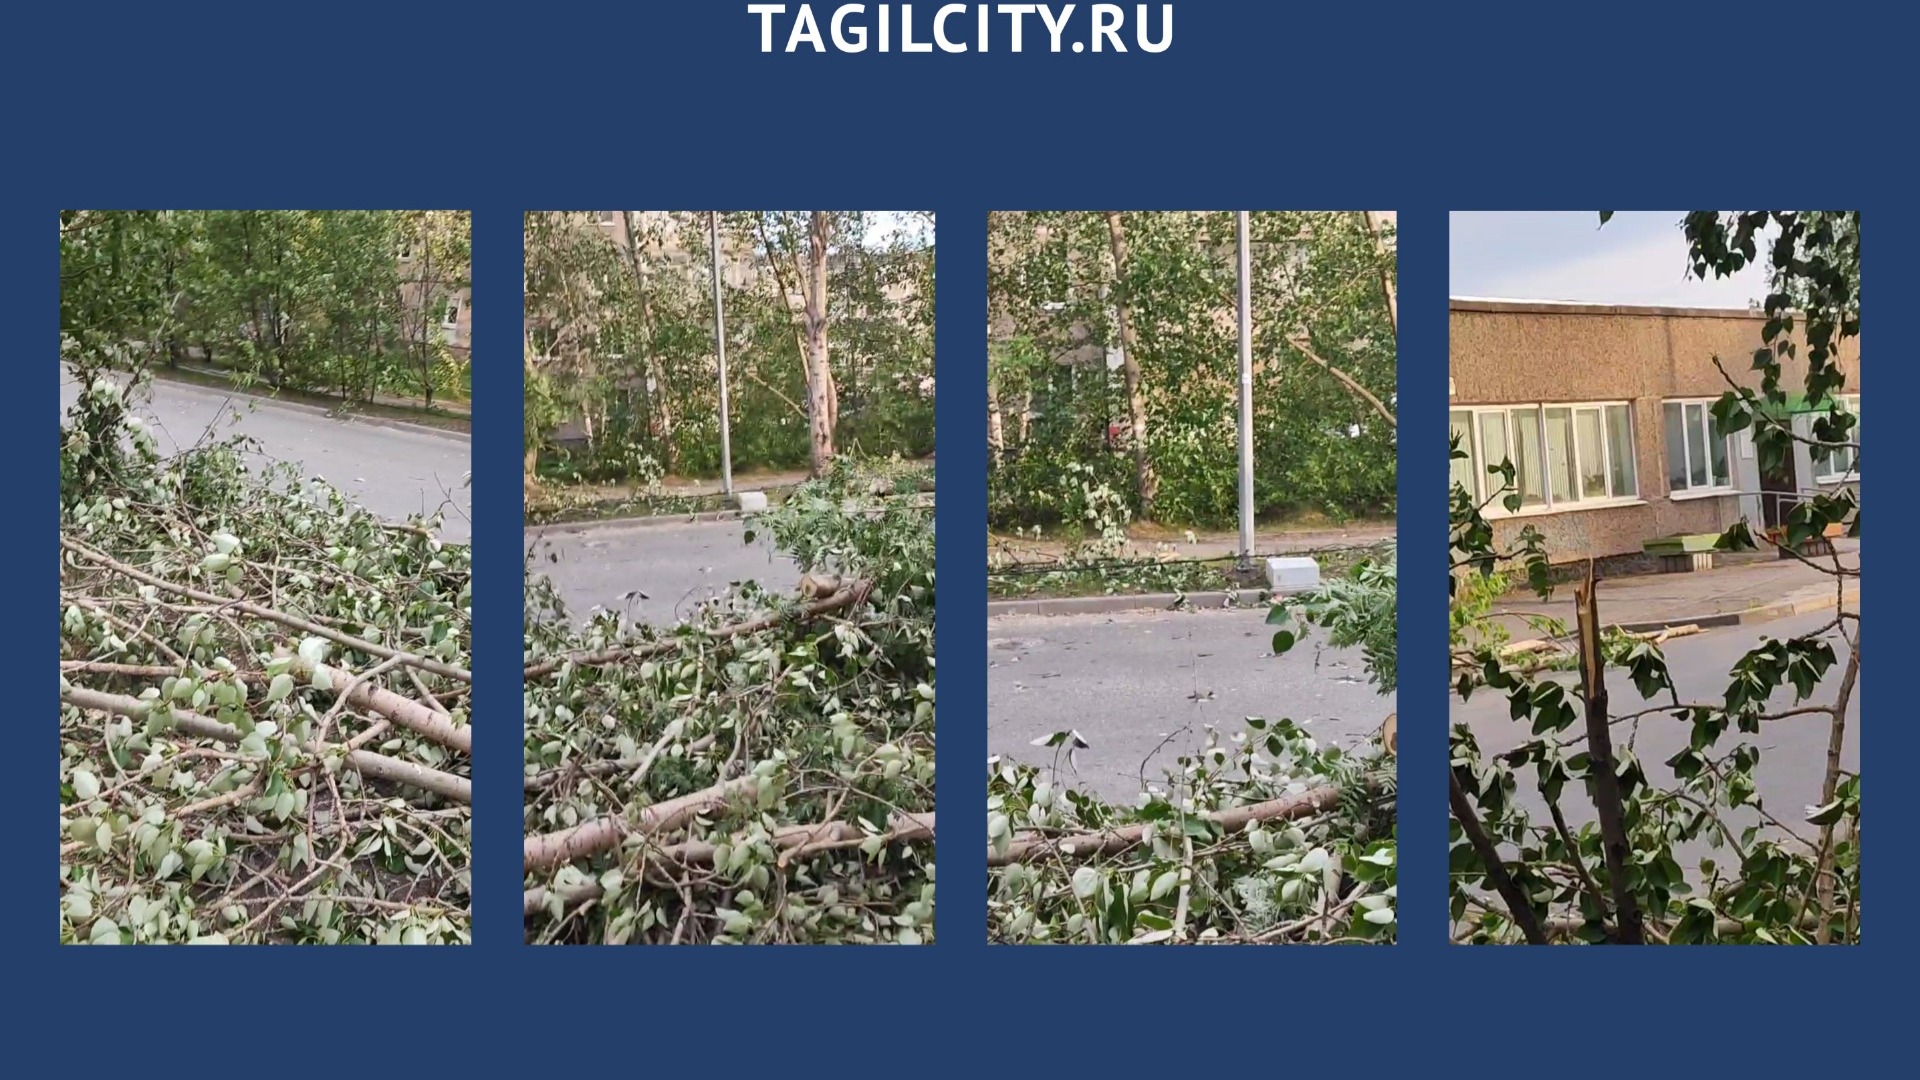 Деревья упали на автомобили и провода из-за ураганного ветра 29 мая в Нижнем Тагиле